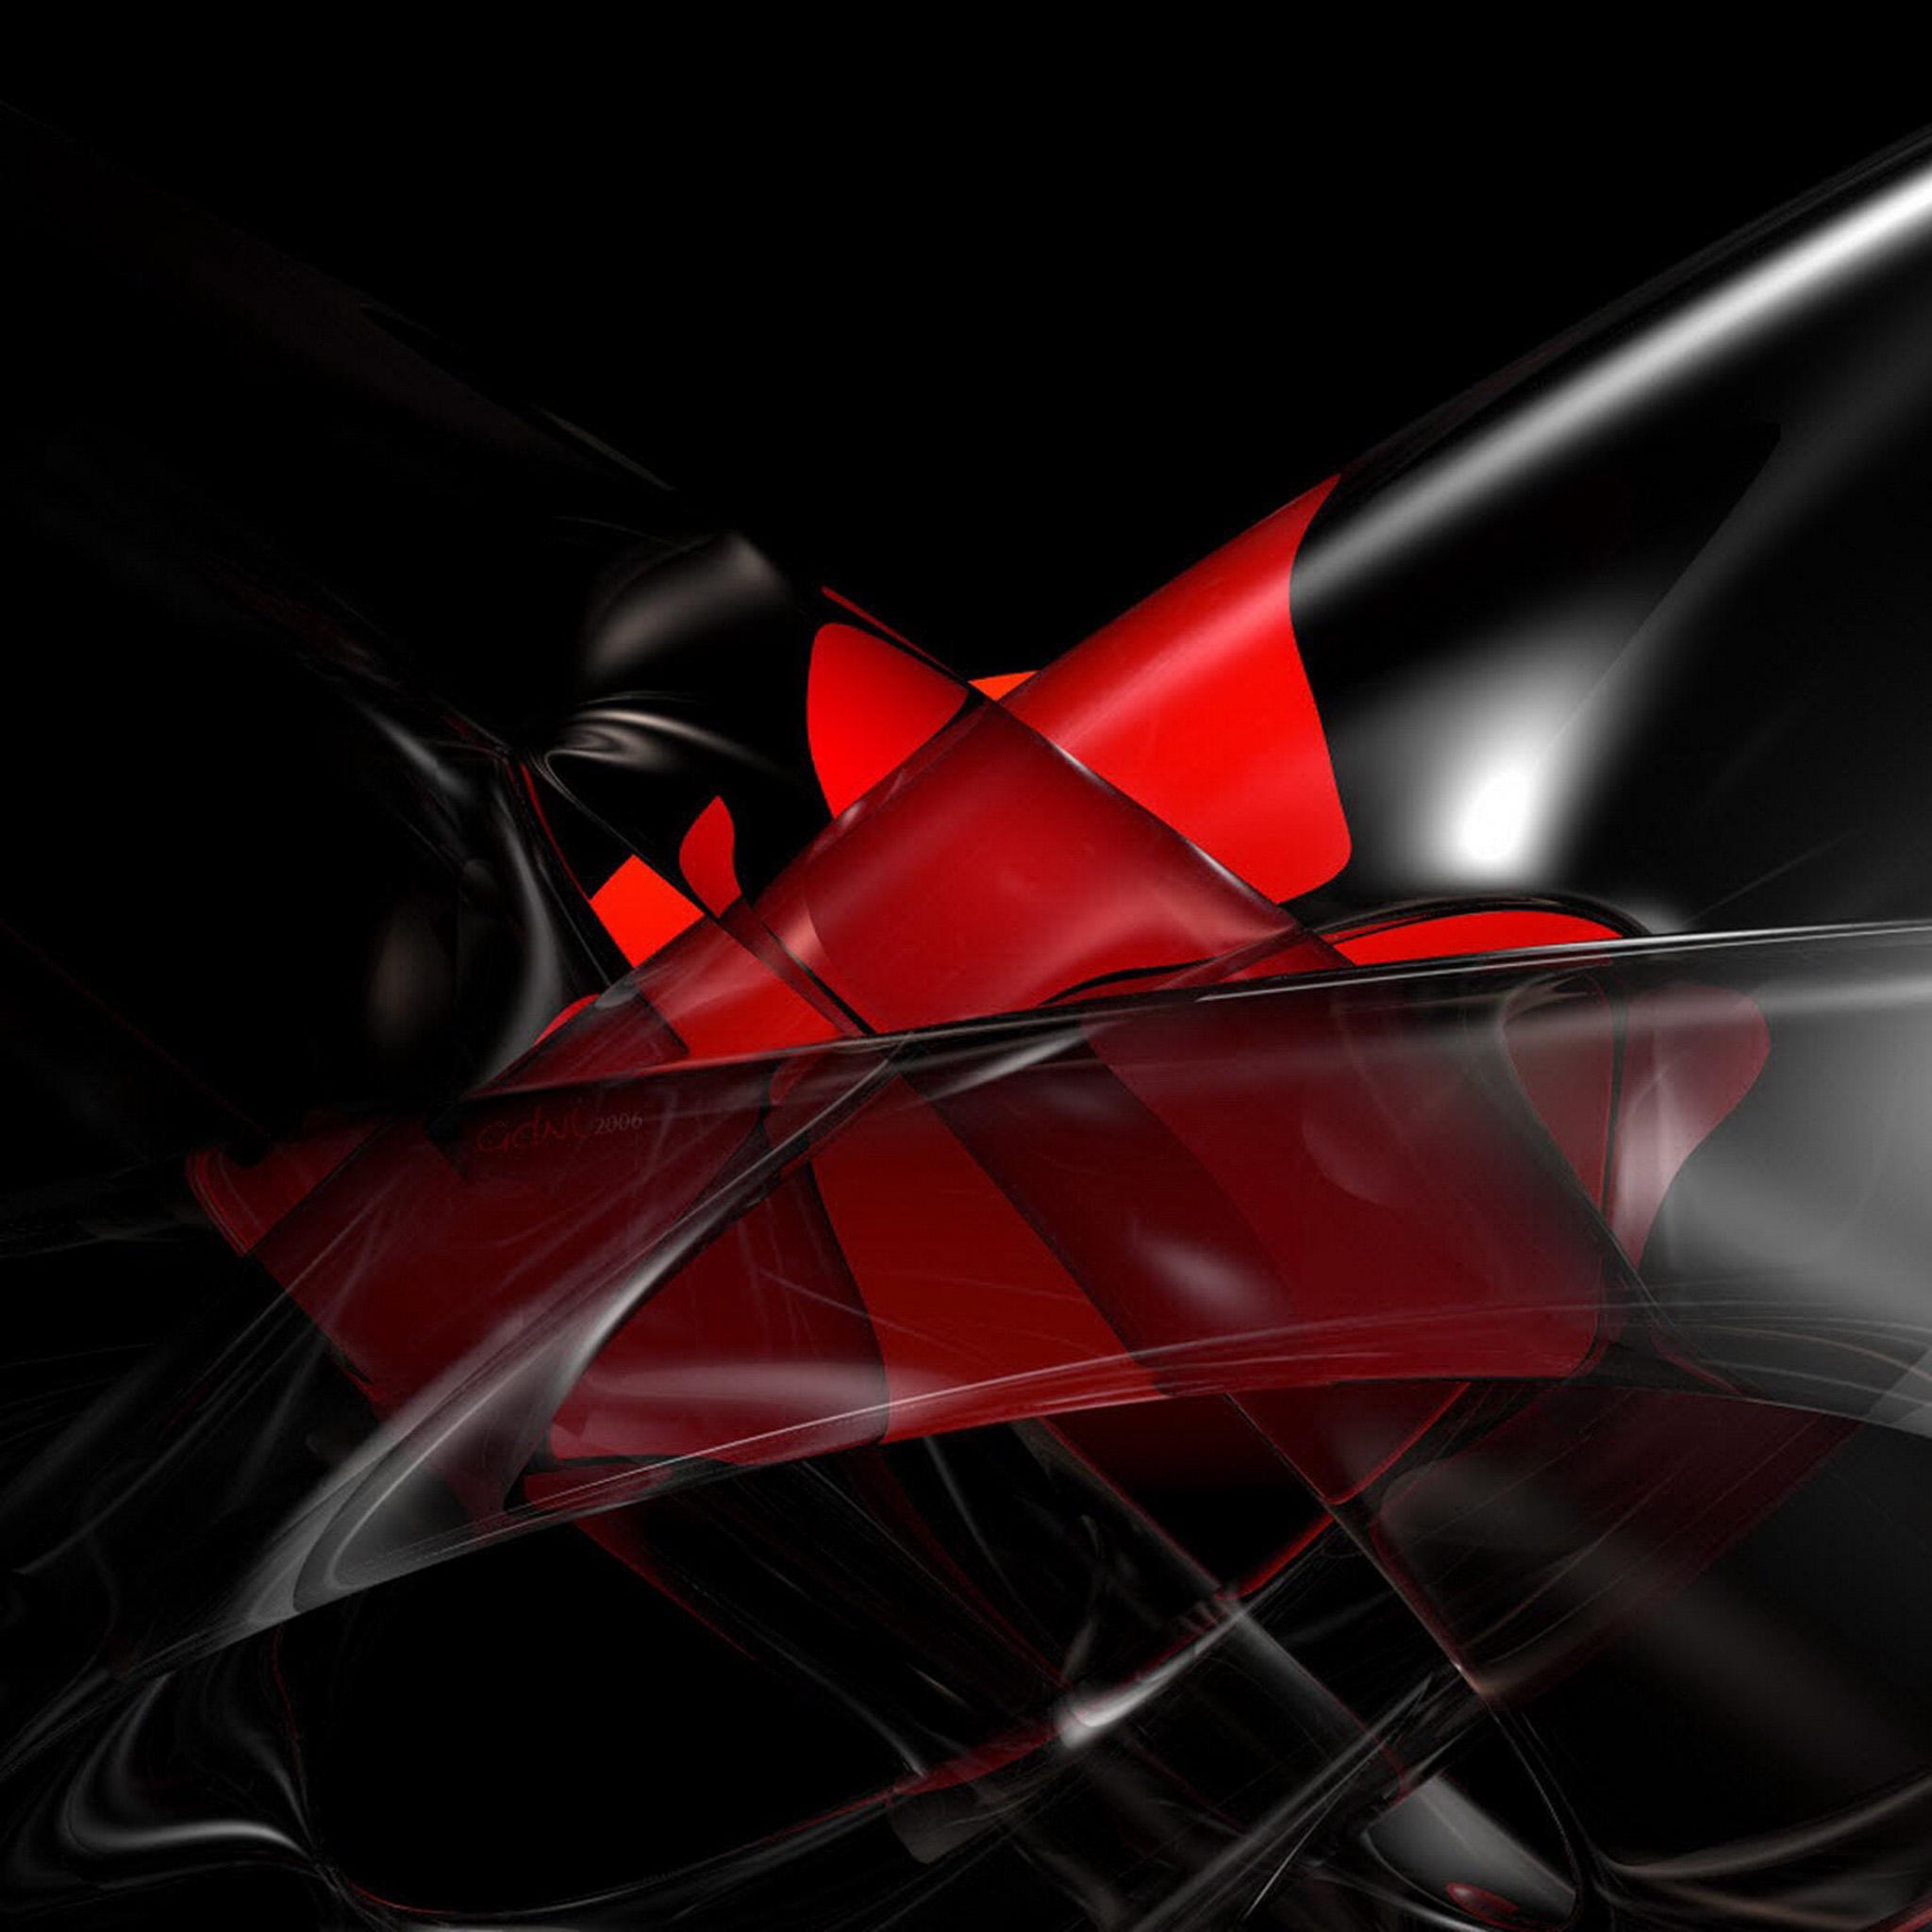 ipad壁紙網膜,赤,黒,カーマイン,自動車照明,グラフィックス